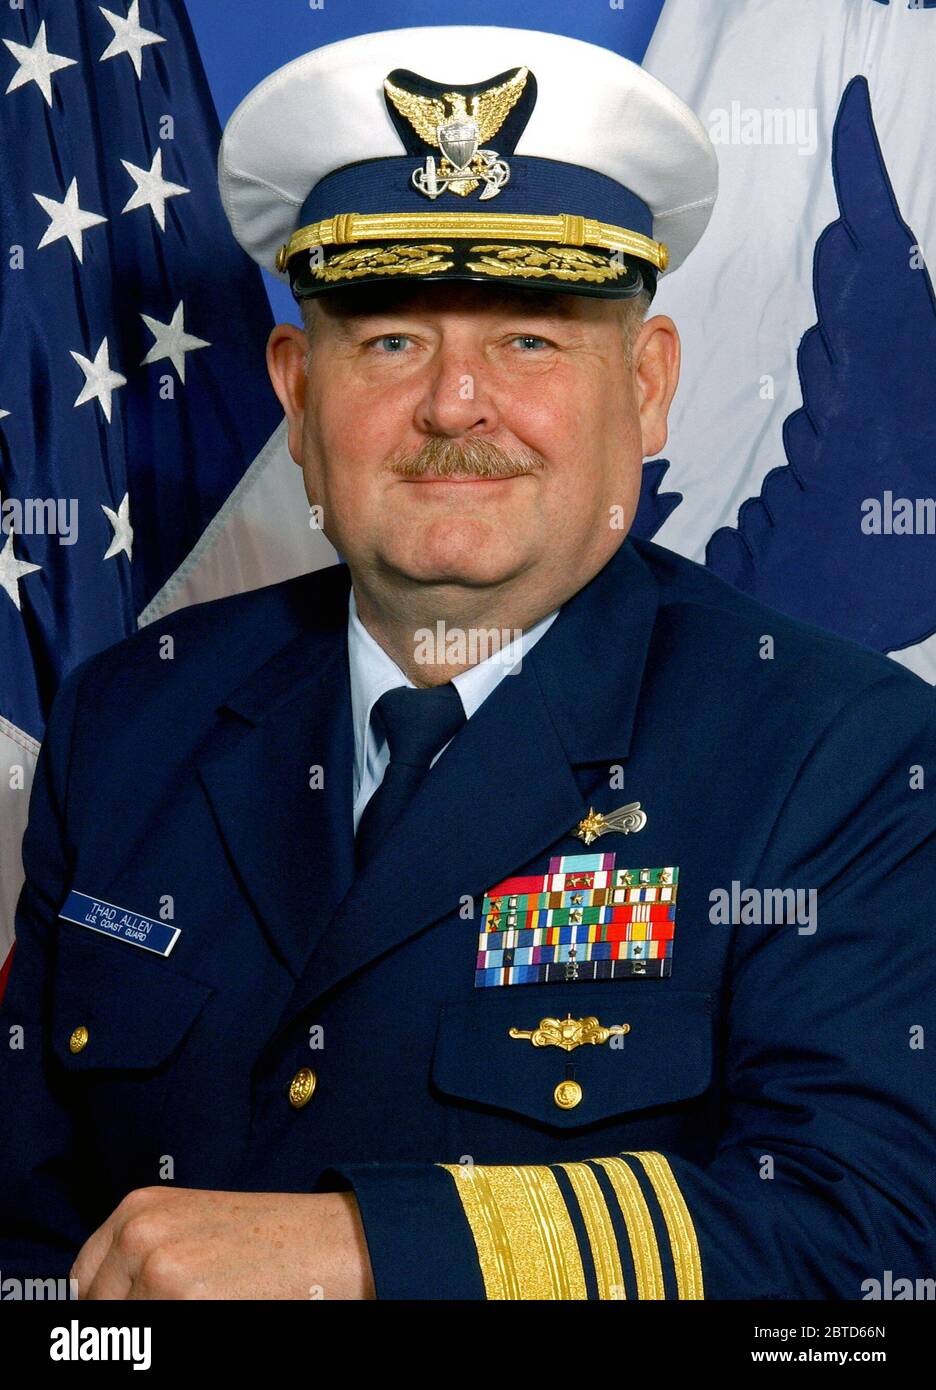 WASHINGTON, D.C. (25 mai 2006)--l'amiral Thad Allen W. a assumé les fonctions de la 23e commandant de la Garde côtière canadienne le 25 mai 2006. L'amiral Allen est originaire de Tucson, Arizona, est diplômé de l'US Coast Guard Academy en 1971. Banque D'Images